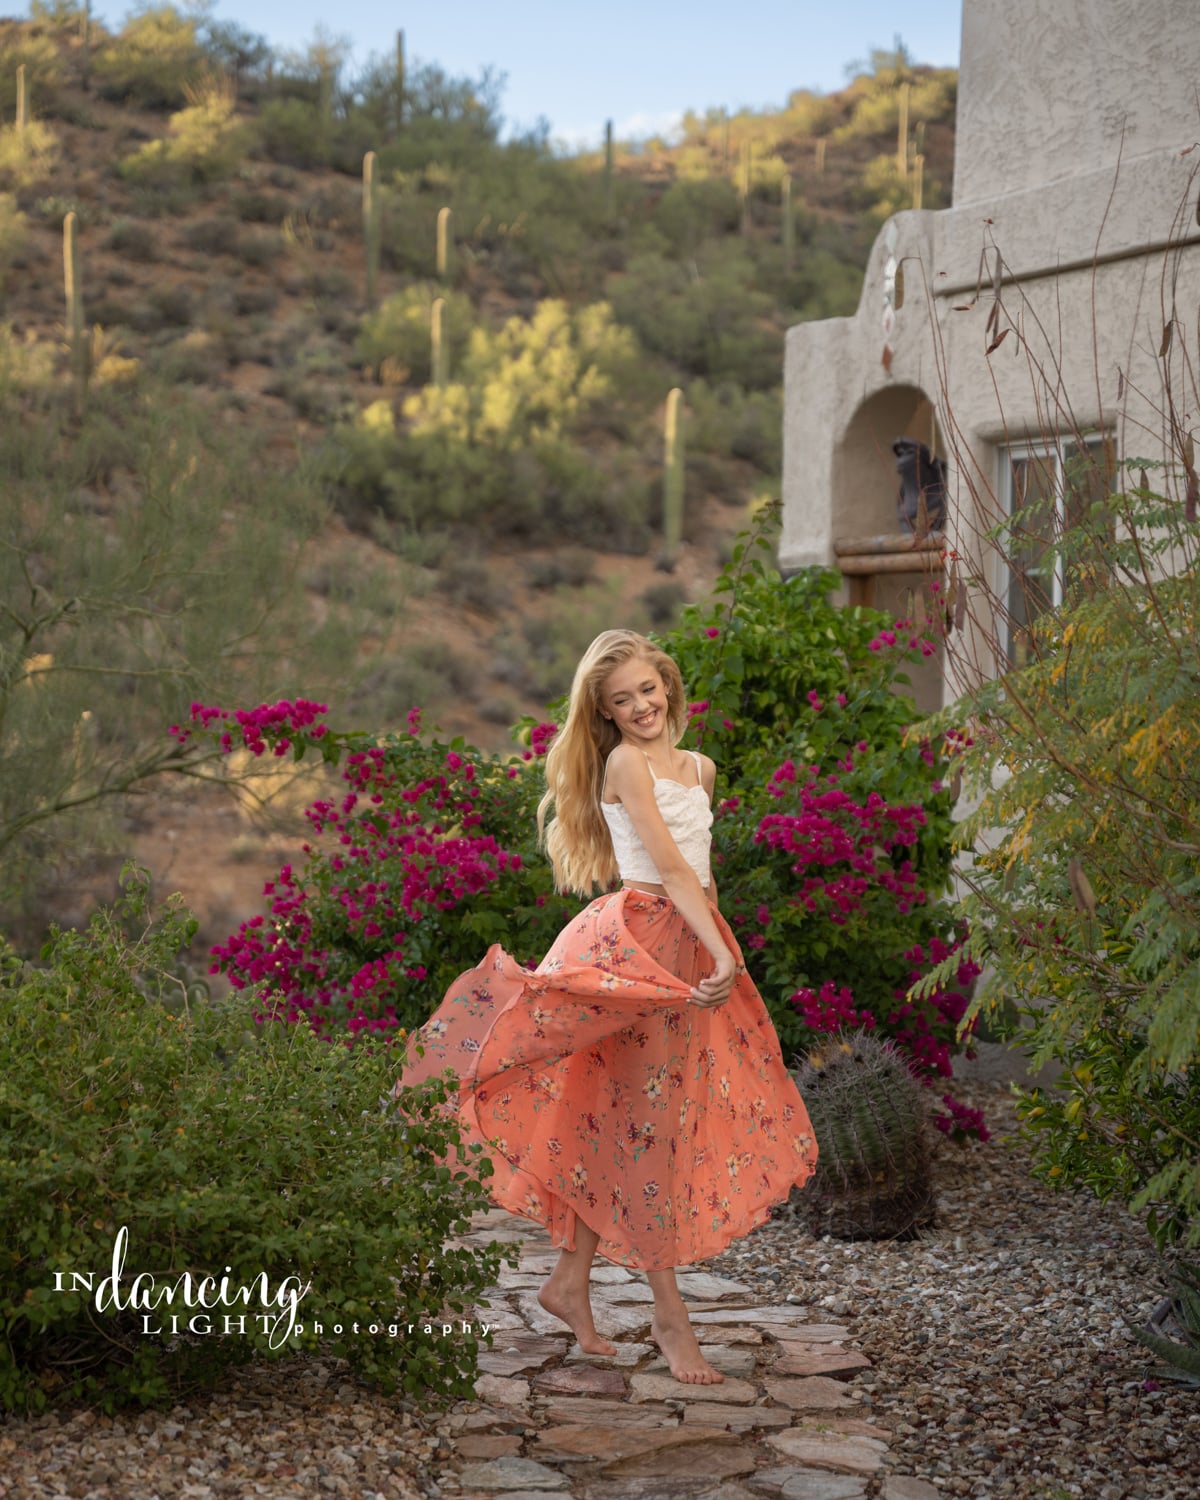 A young girl wearing an orange skirt dances along a desert pathway